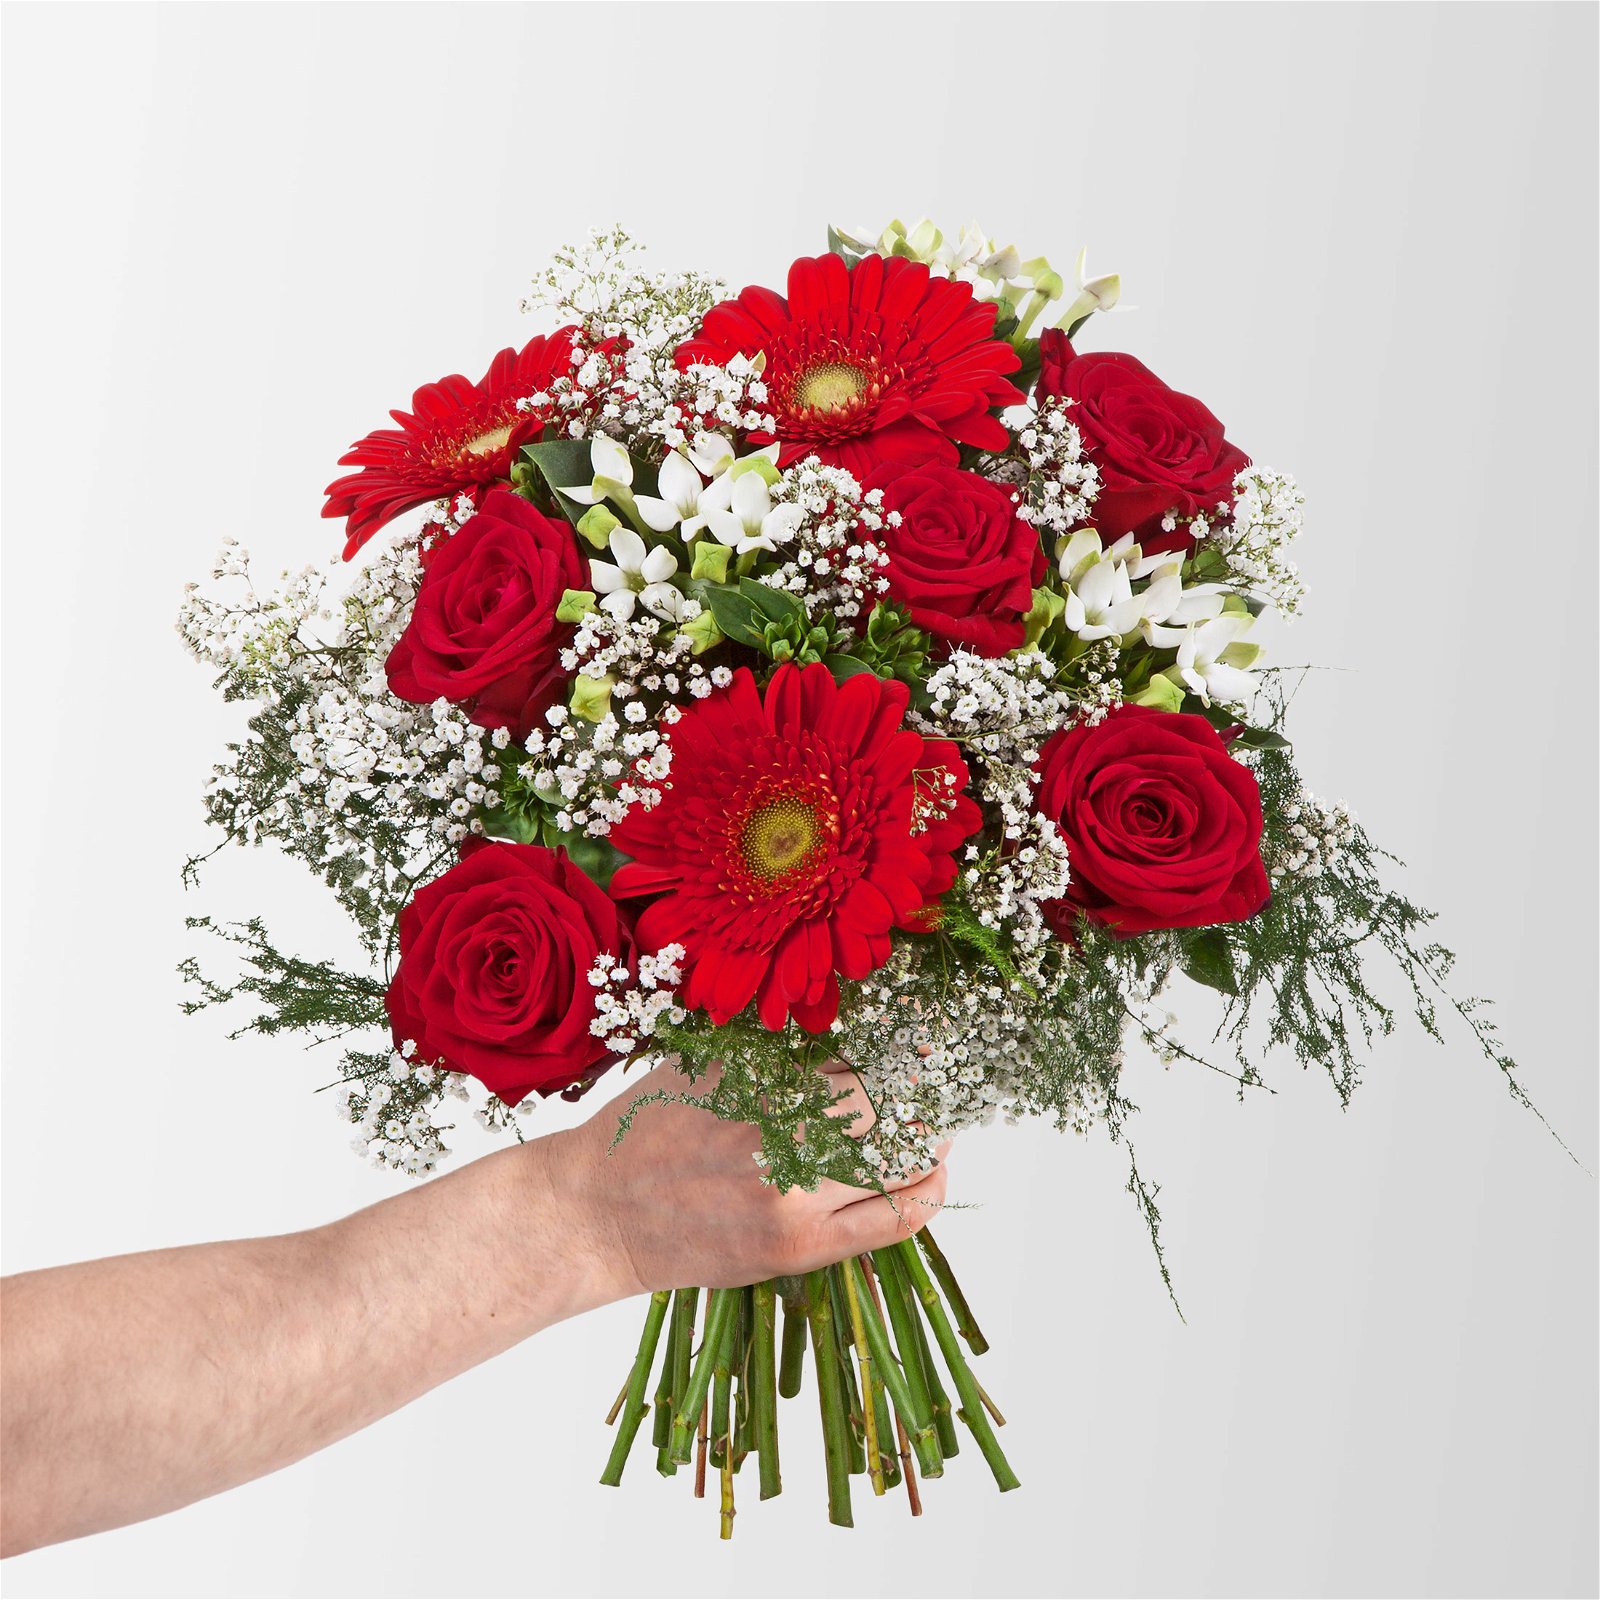 Blumenstrauß 'Liebesüberraschung' inkl. gratis Grußkarte